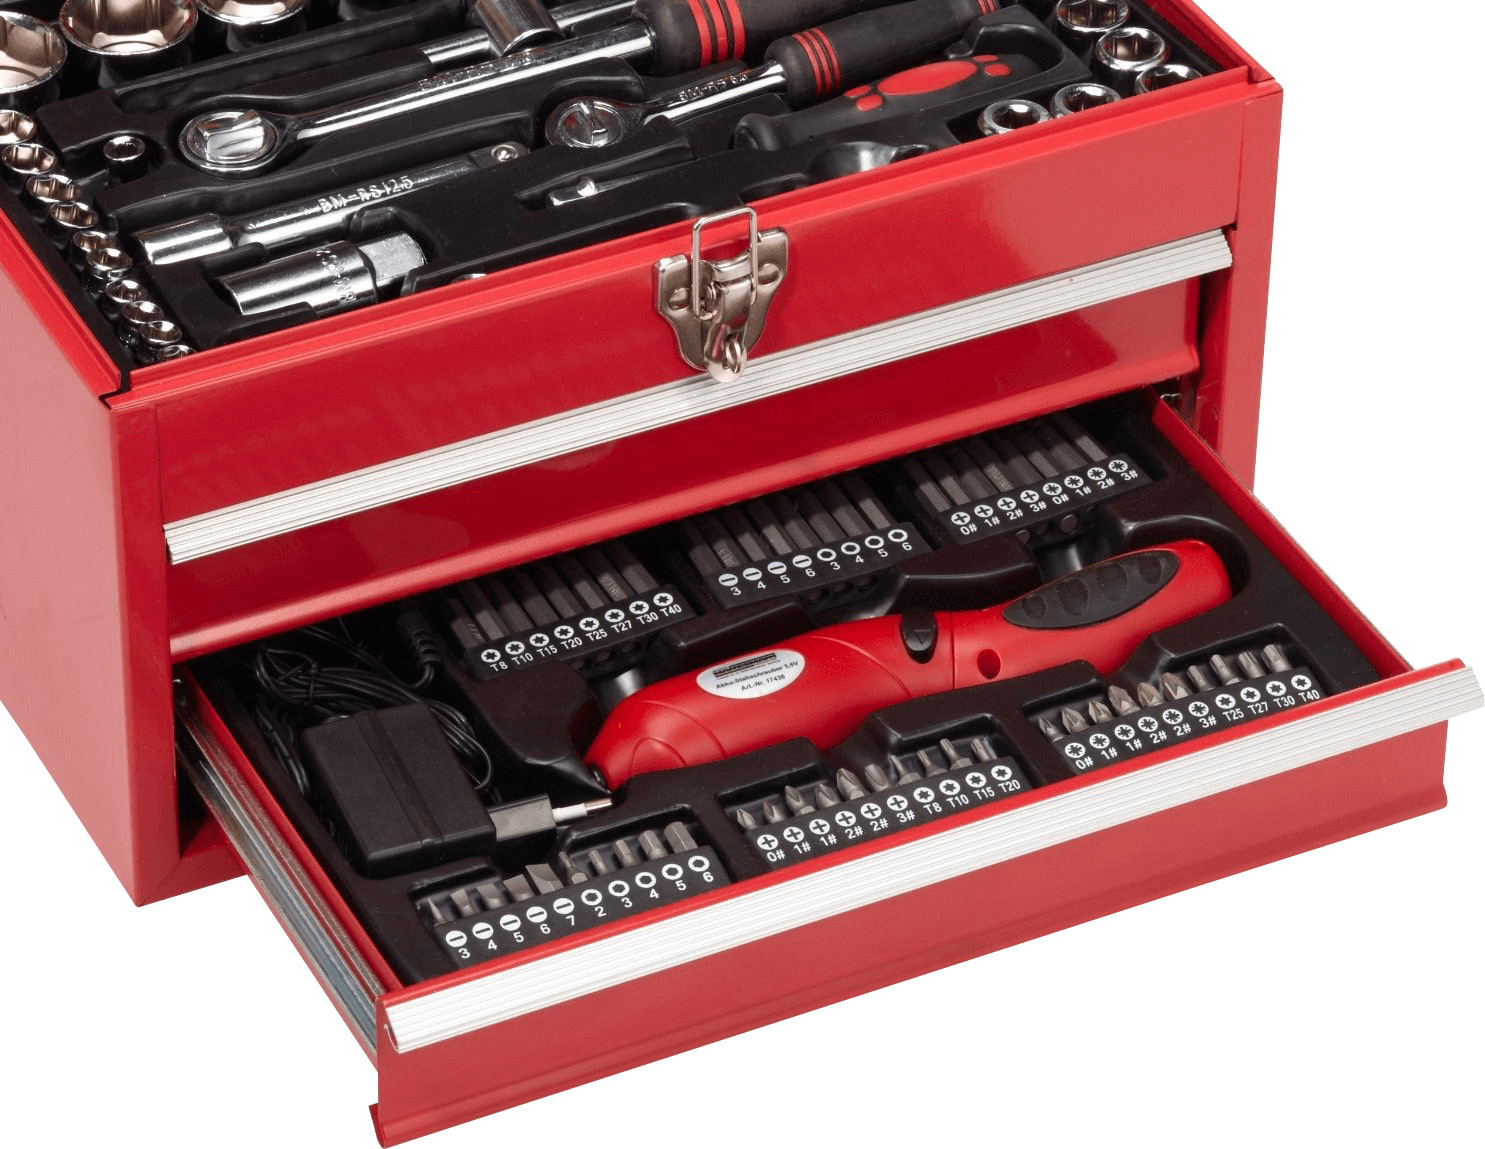 Oferta flash en el maletín de herramientas Mannesmann M29075 de 108 piezas:  hasta medianoche costará 95,99 euros en